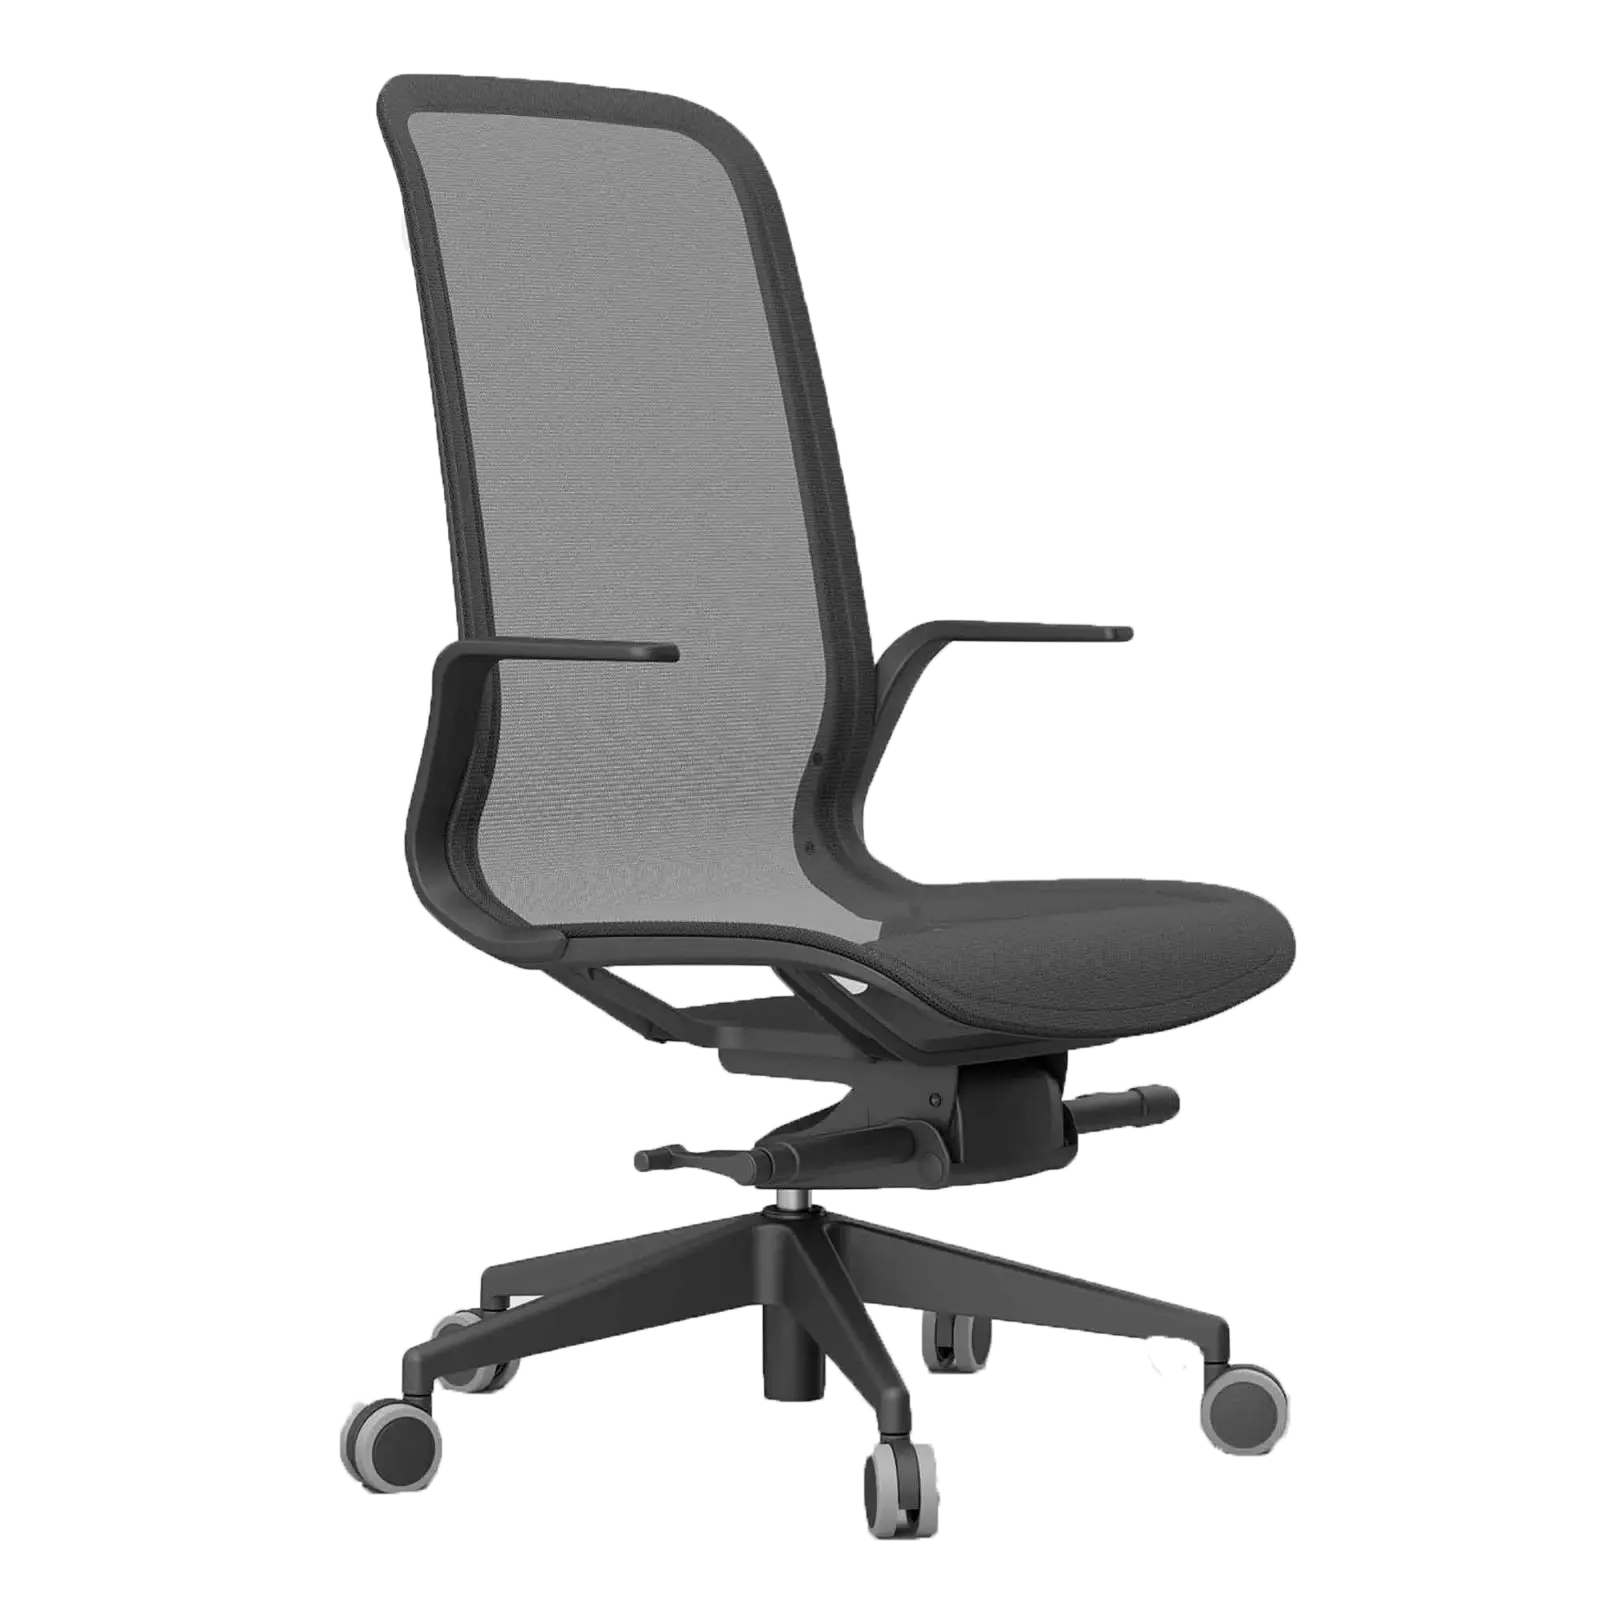 Butaca ejecutiva moderna de alta calidad, sillón de oficina, Mary Lin CUF Milano